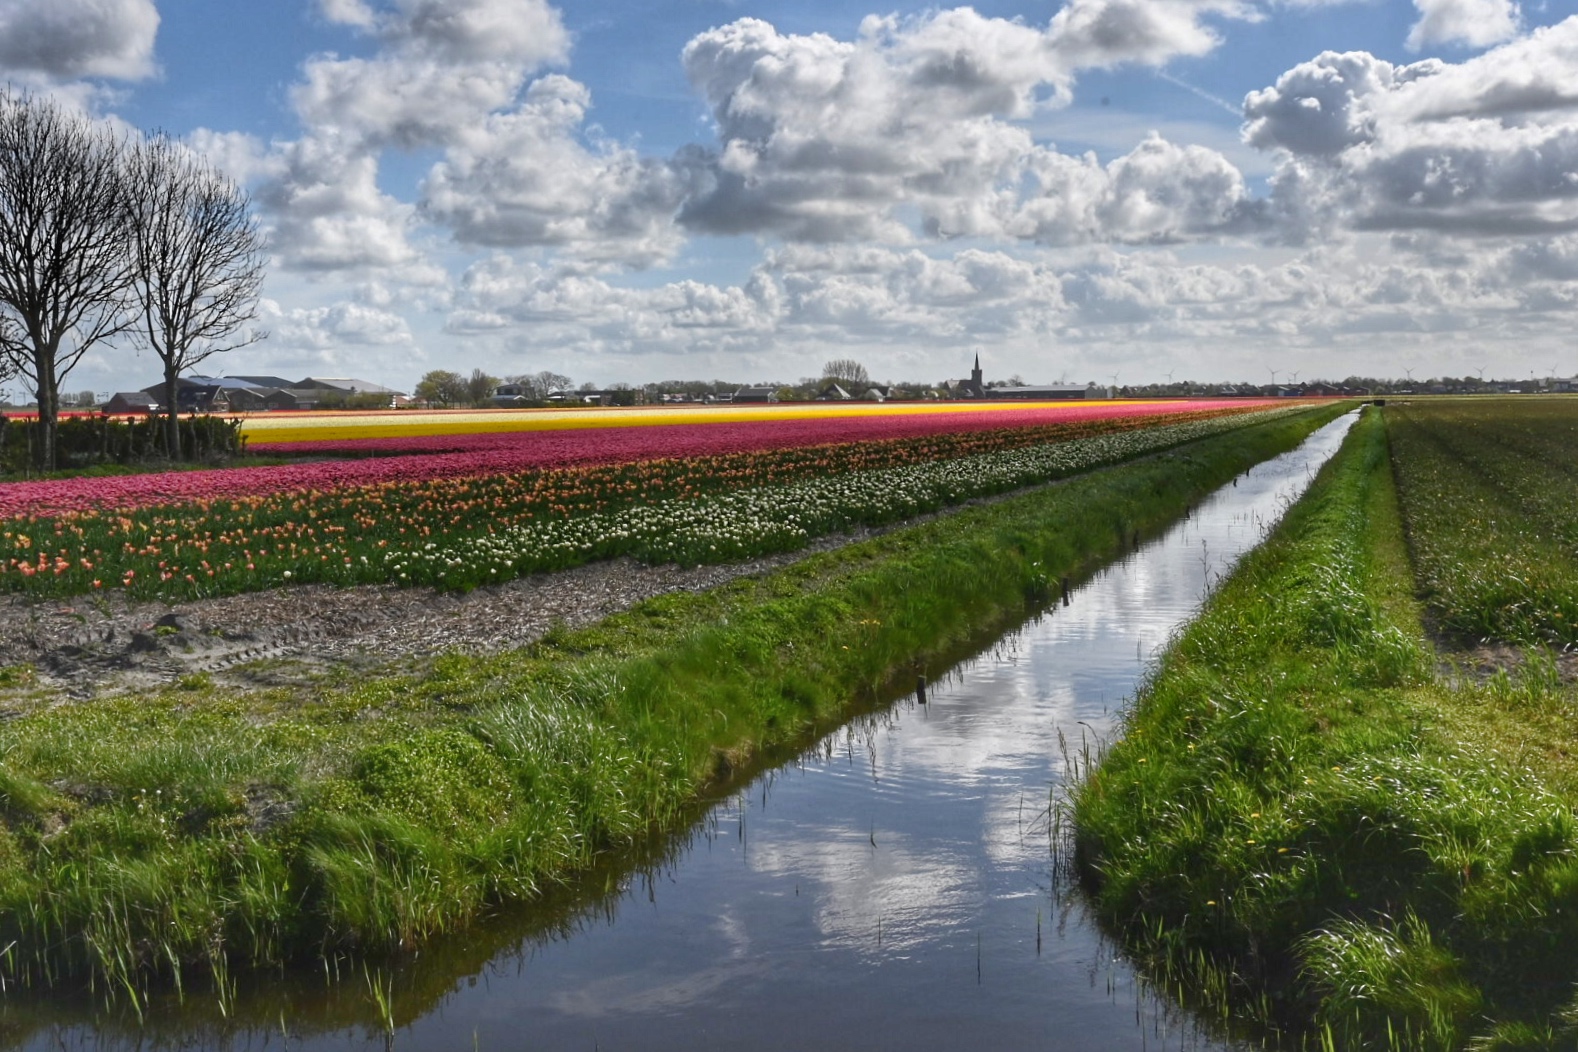 Landschapsfoto in Breezand, met slootje en tulpenvelden.